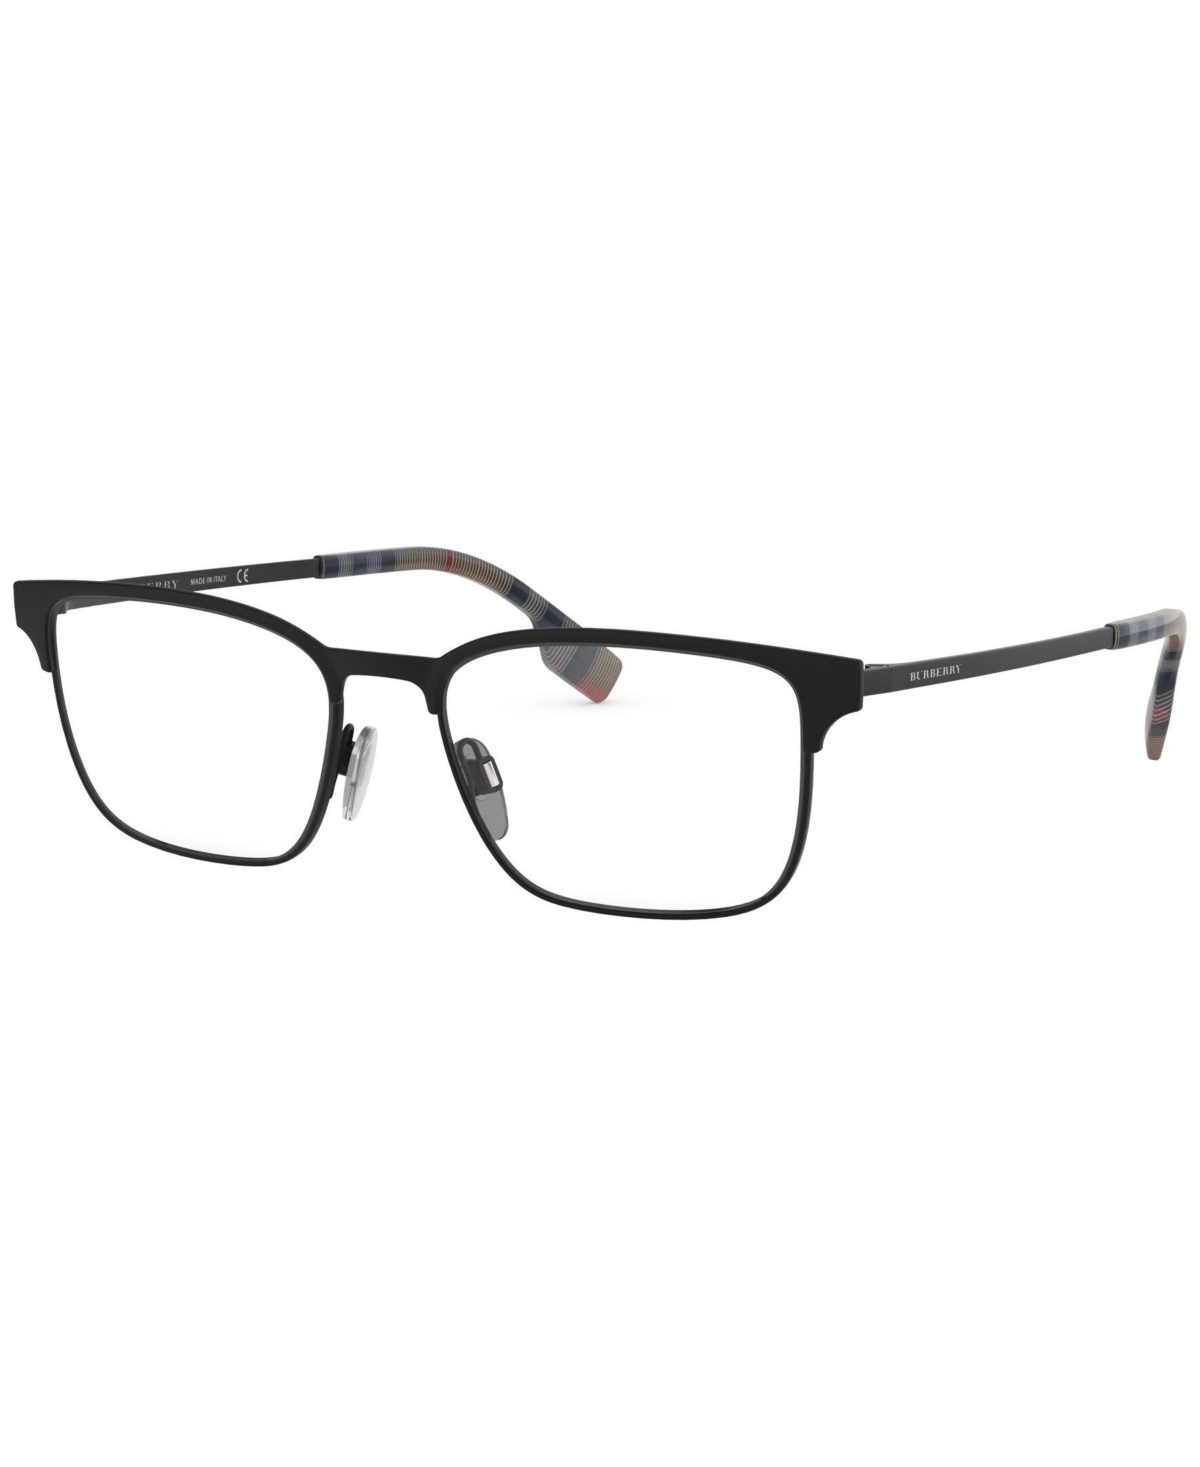 BE1332 Men's Rectangle Eyeglasses - Rubber Bla